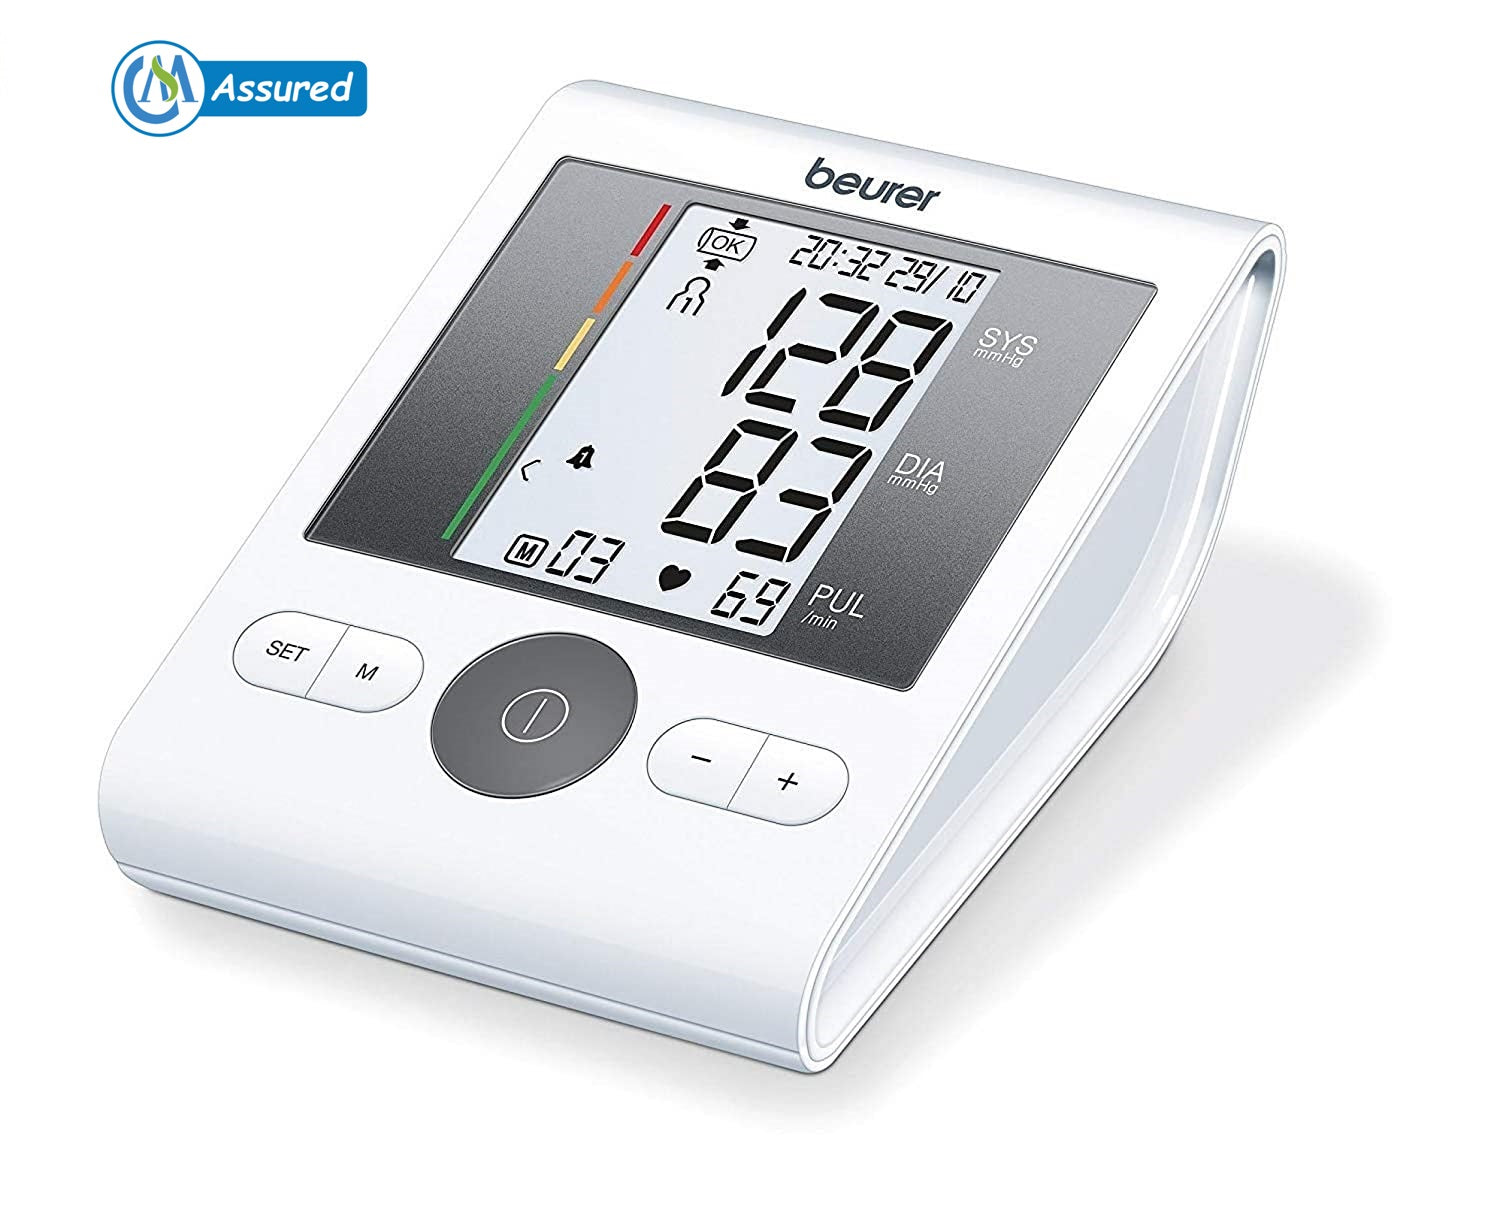 BP (Blood Pressure) Monitor (White) BM 28 Beurer